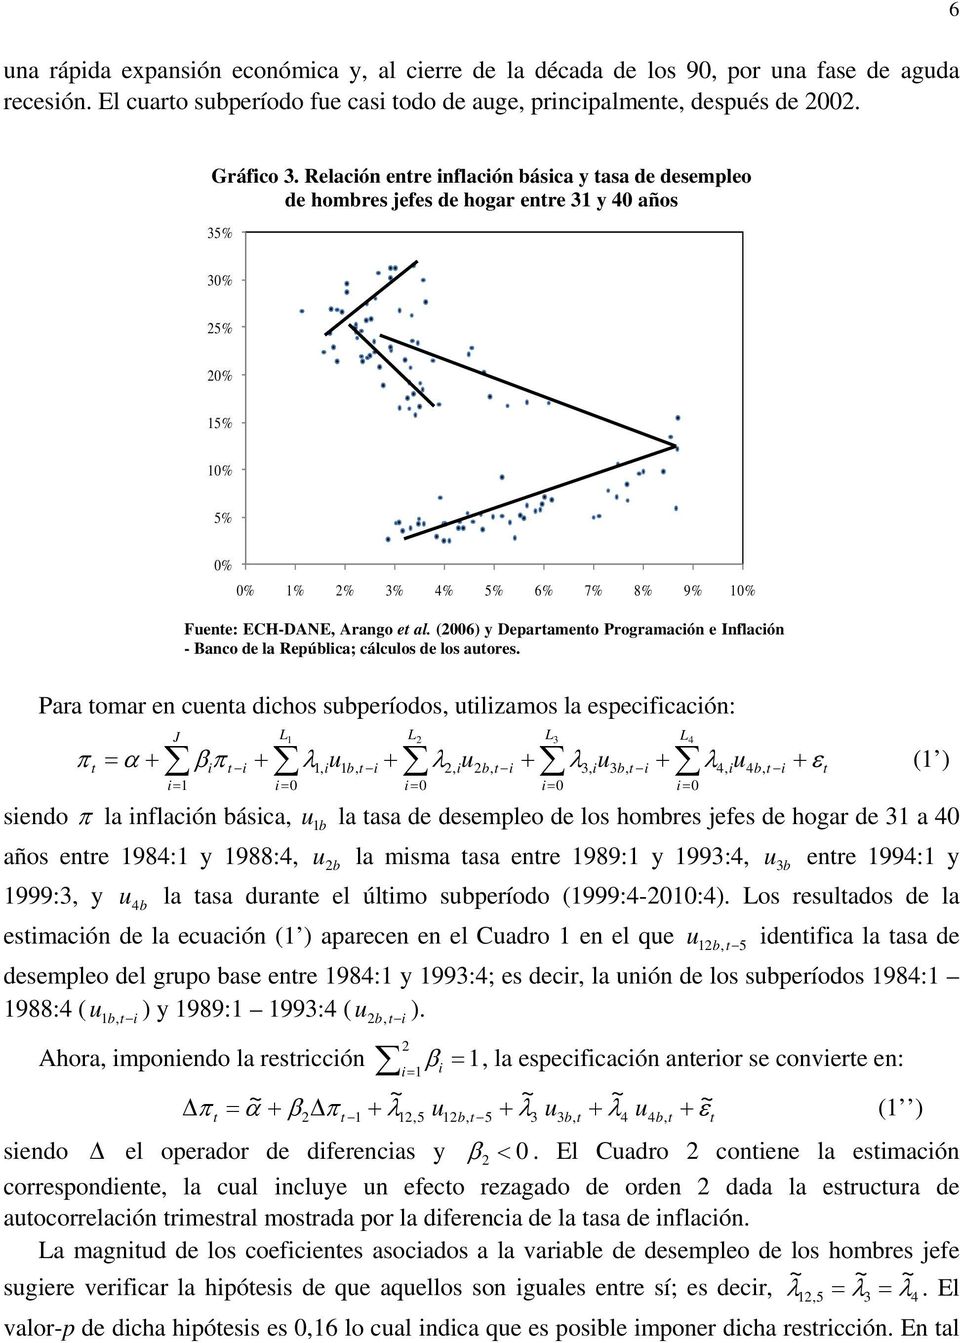 (2006) y Deparameno Programación e Inflación - Banco de la República; cálculos de los auores.